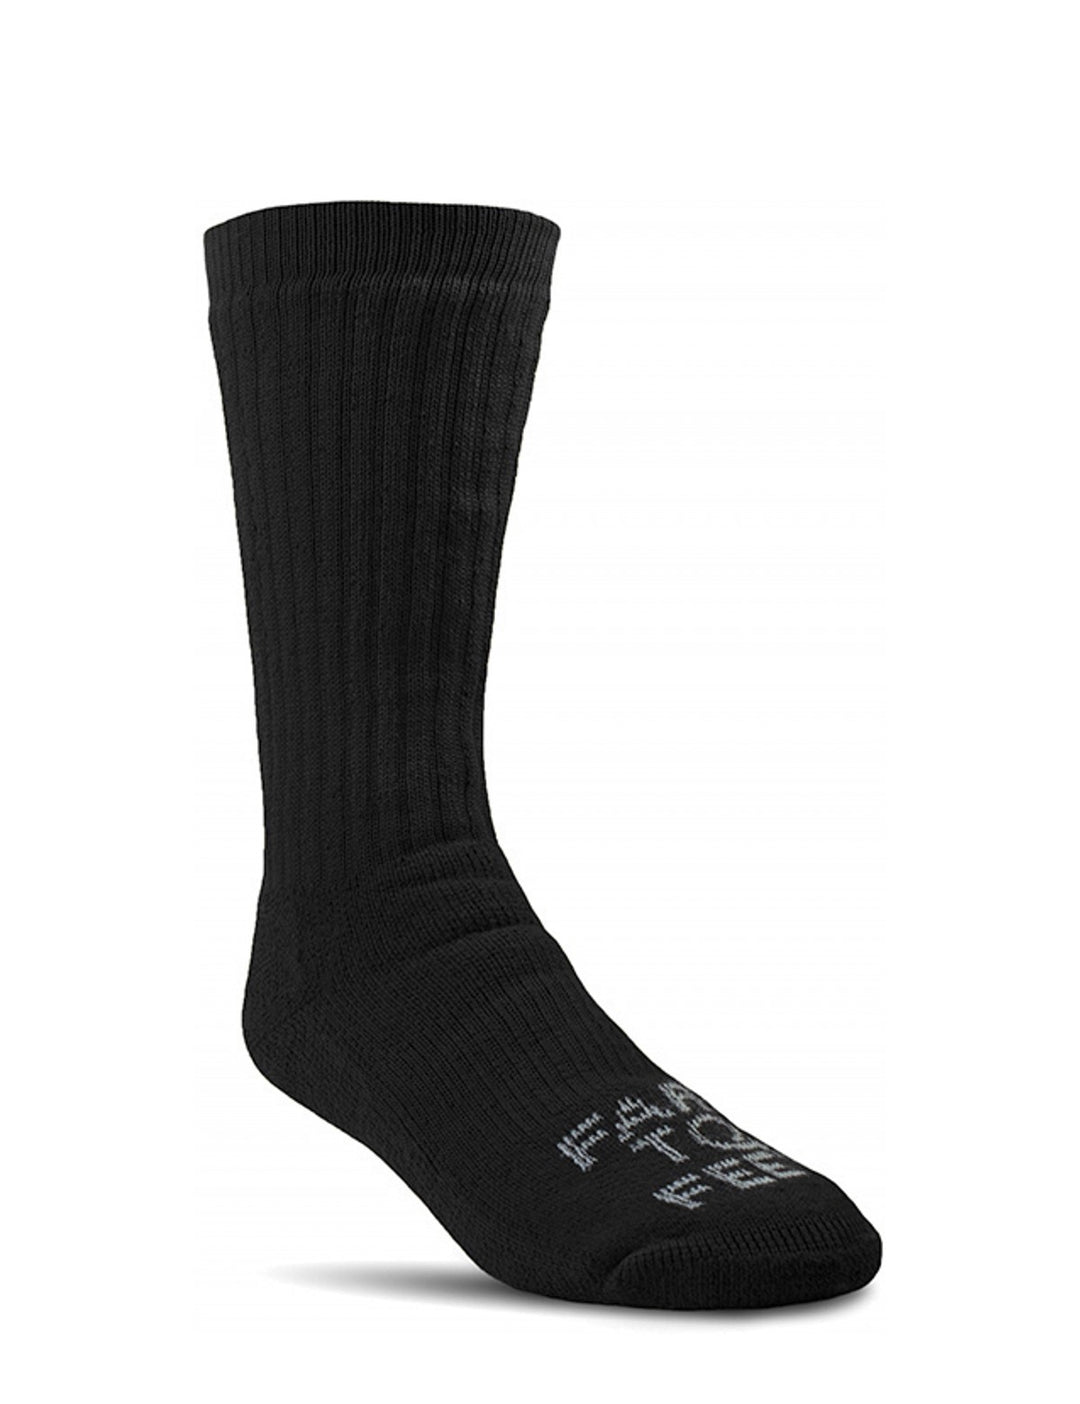 Belloxis Gym Gifts for Men Gym Socks Mens Socks Gifts for Gym Lovers Men Cozy Socks Comfy Socks Crew Socks for Men Black Socks Cotton Socks Gifts